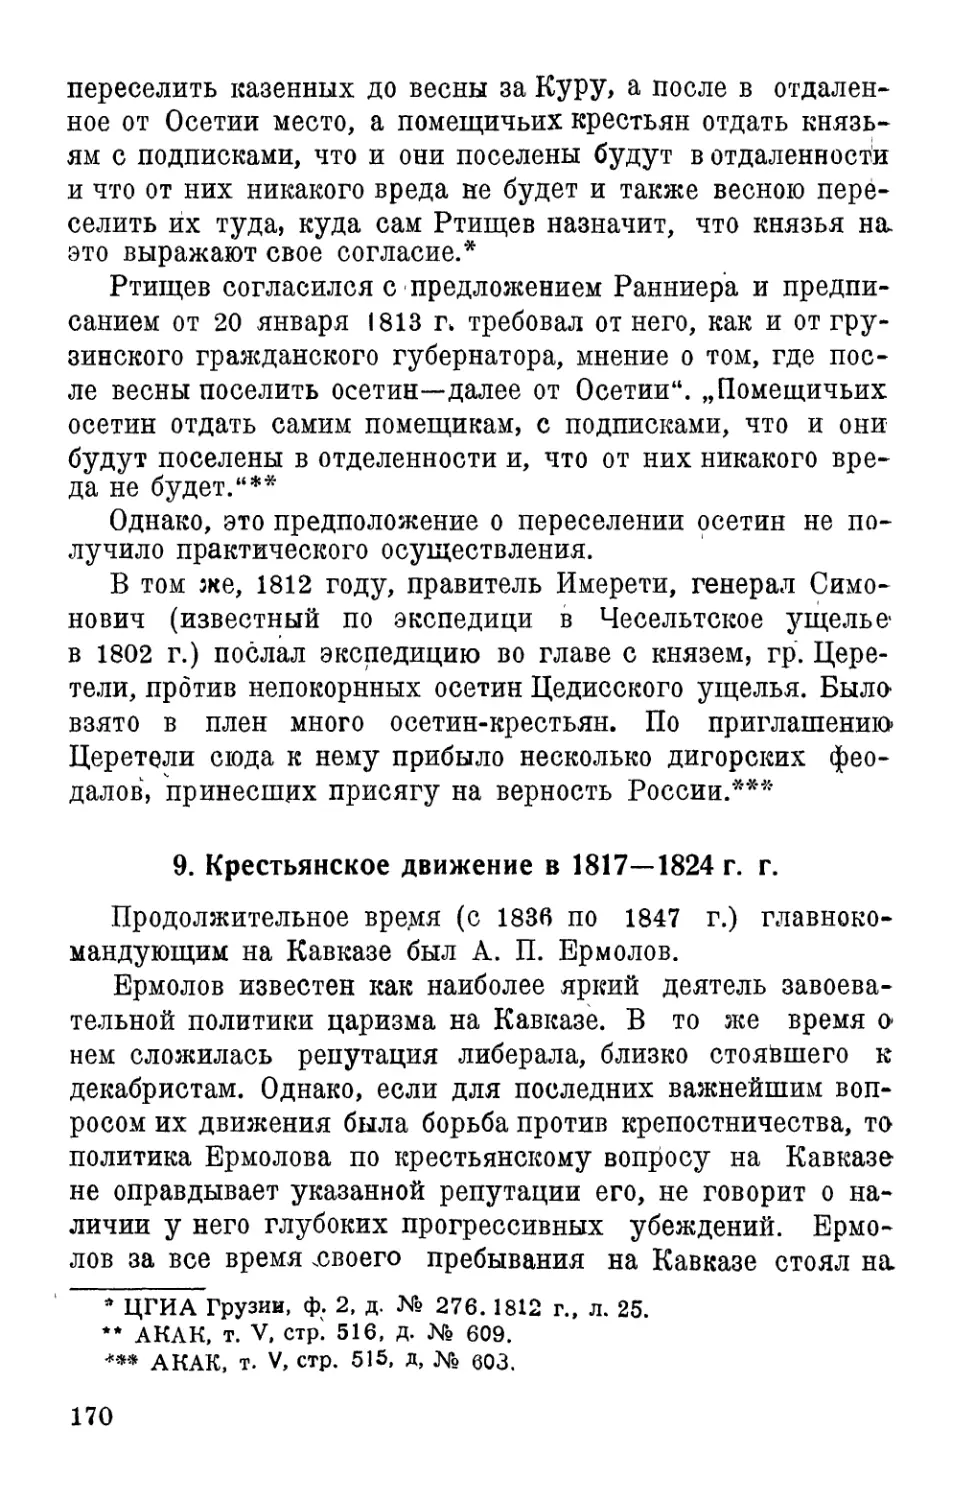 8. Крестьянское движение в 1817–1824 г.г.